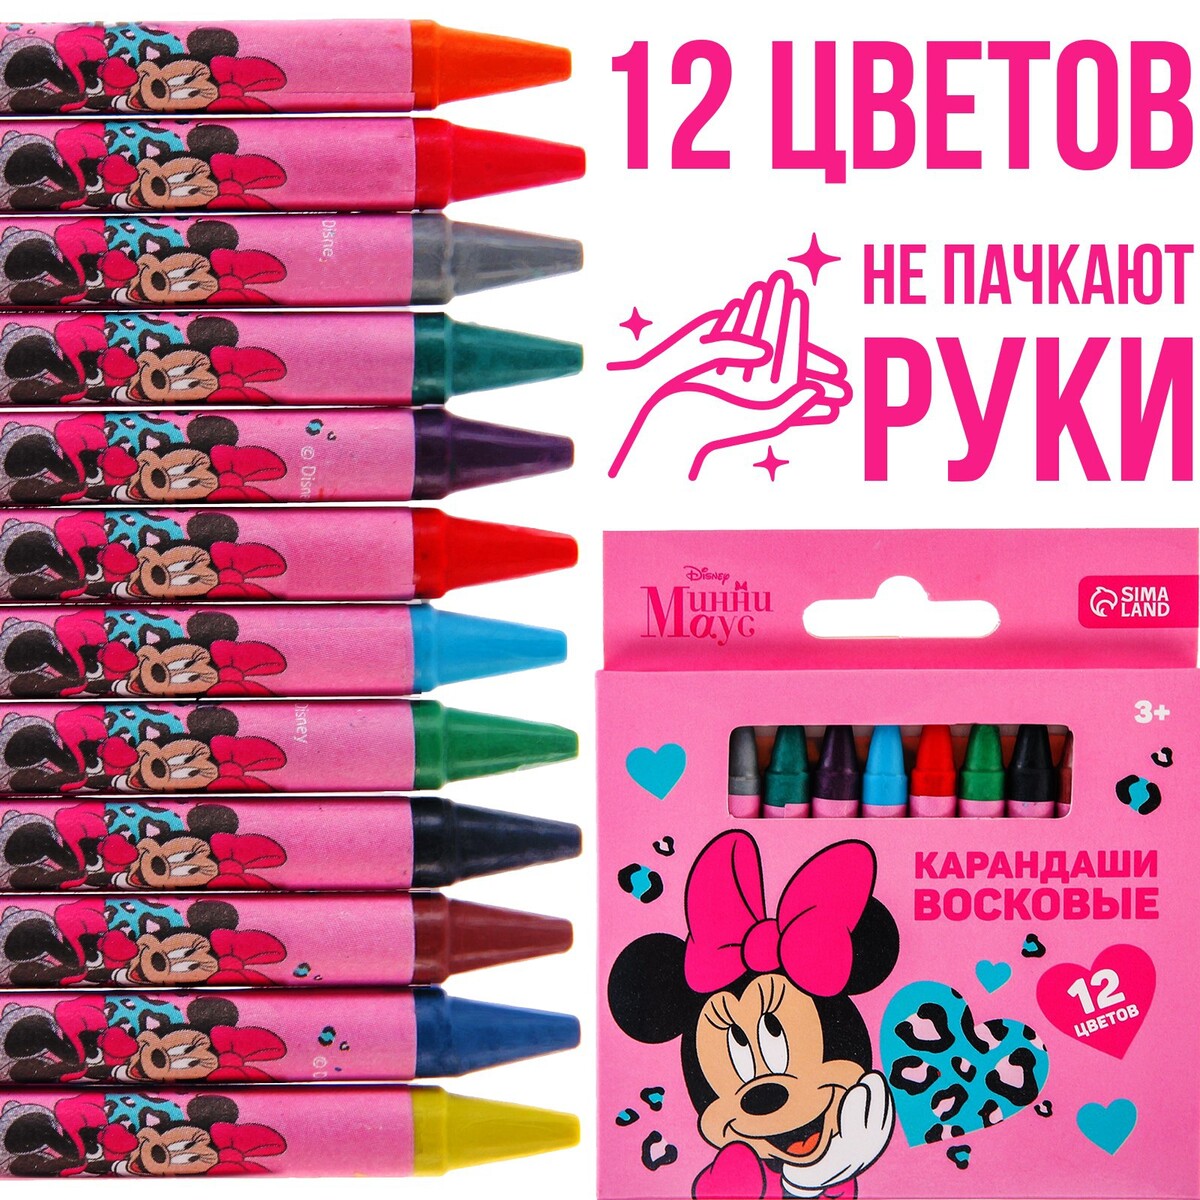 Восковые карандаши, набор 12 цветов, минни маус